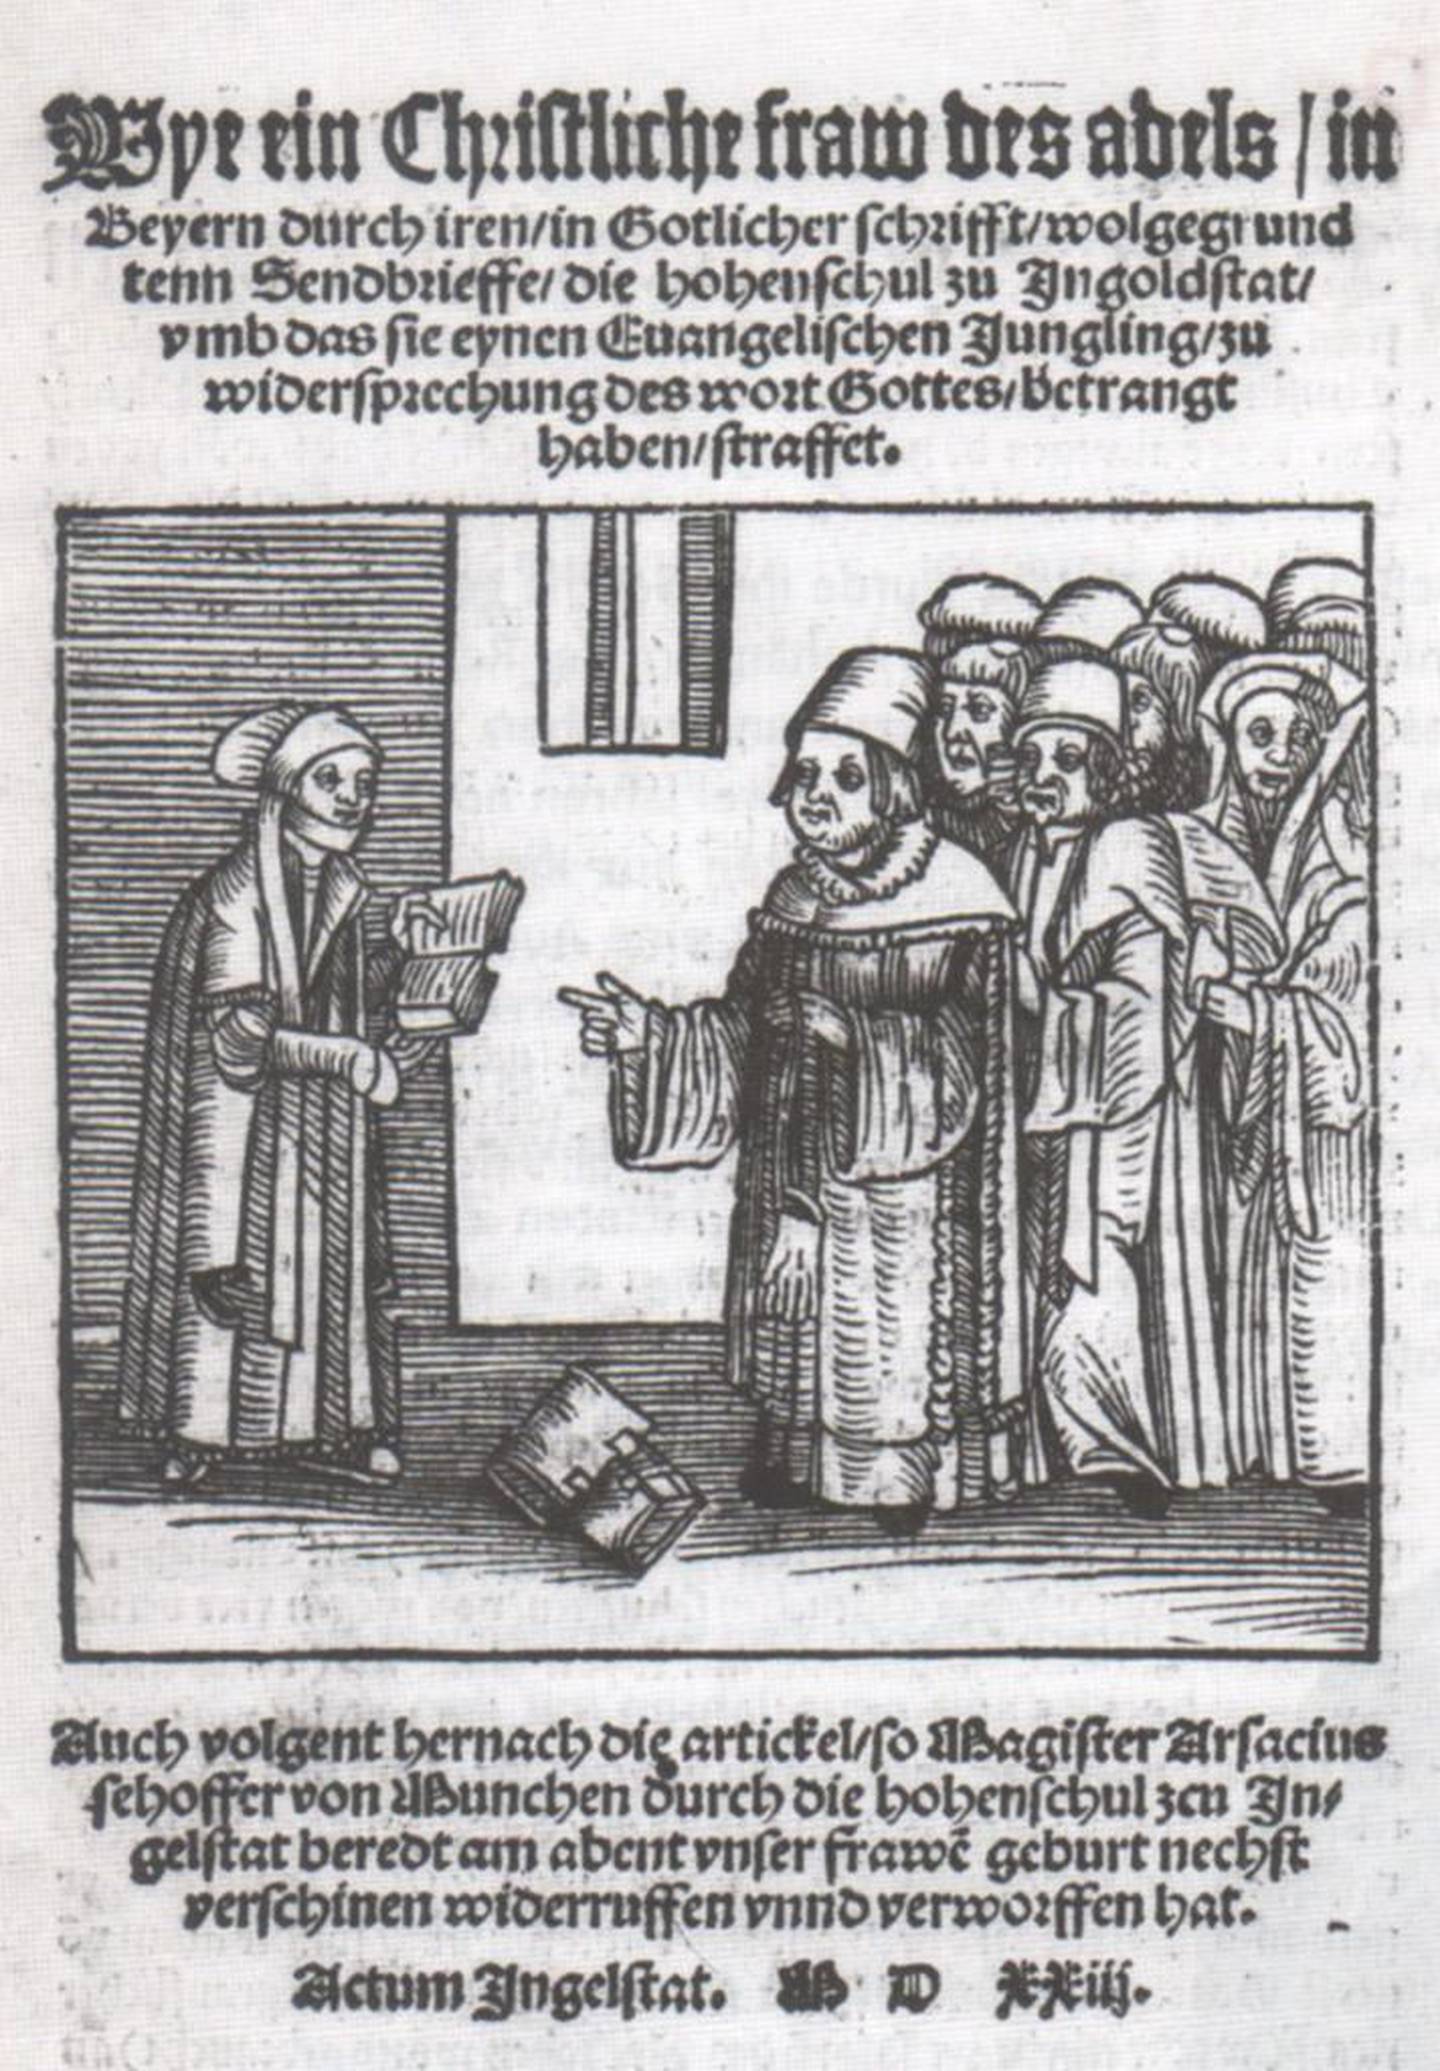 Argula von Grumbach frå Bayern hadde enorm bibelkunnskap og brukte bibelvers for å argumentere for at også kvinner skulle delta i reformasjonsdebatten. Illustrasjonen, også trykt i tidsskriftet, er frå ein pamflett ho skreiv i 1523.